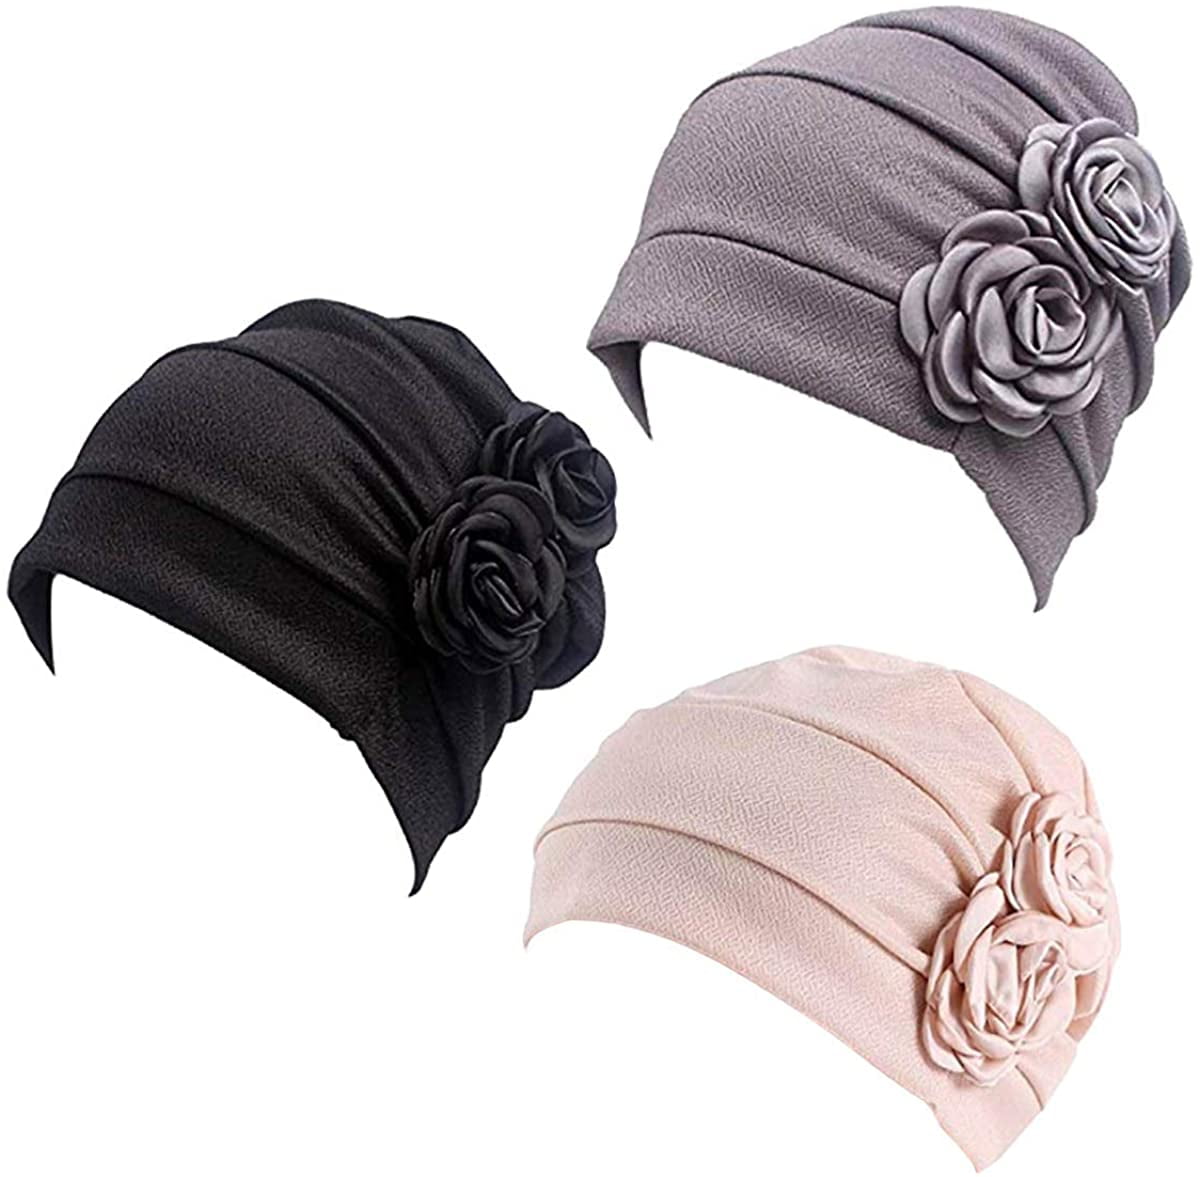 Muslim Women Turban Head Wrap Flower Beanies Hat Cancer Chemo Hair Loss Wrap Cap